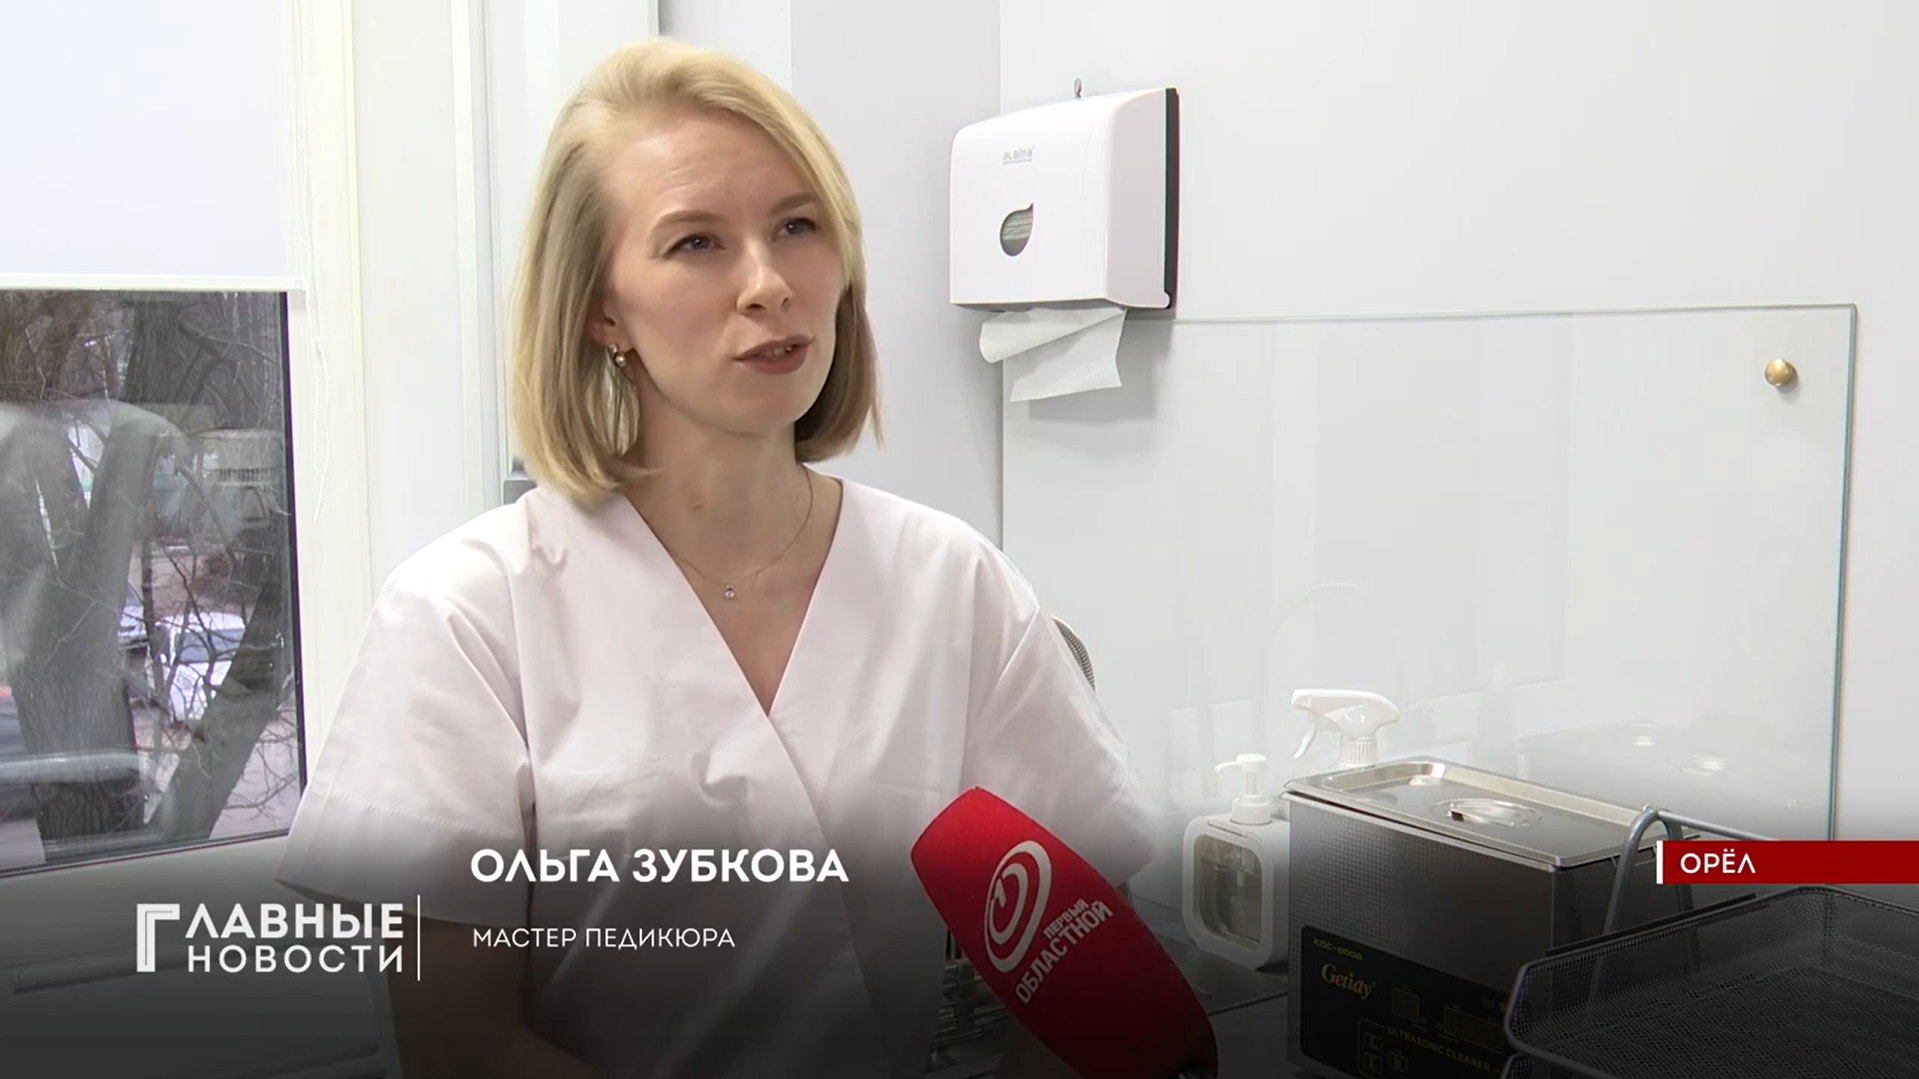 Мастер педикюра Ольга Зубкова рассказала, как открыла свой бизнес с помощью соцконтракта